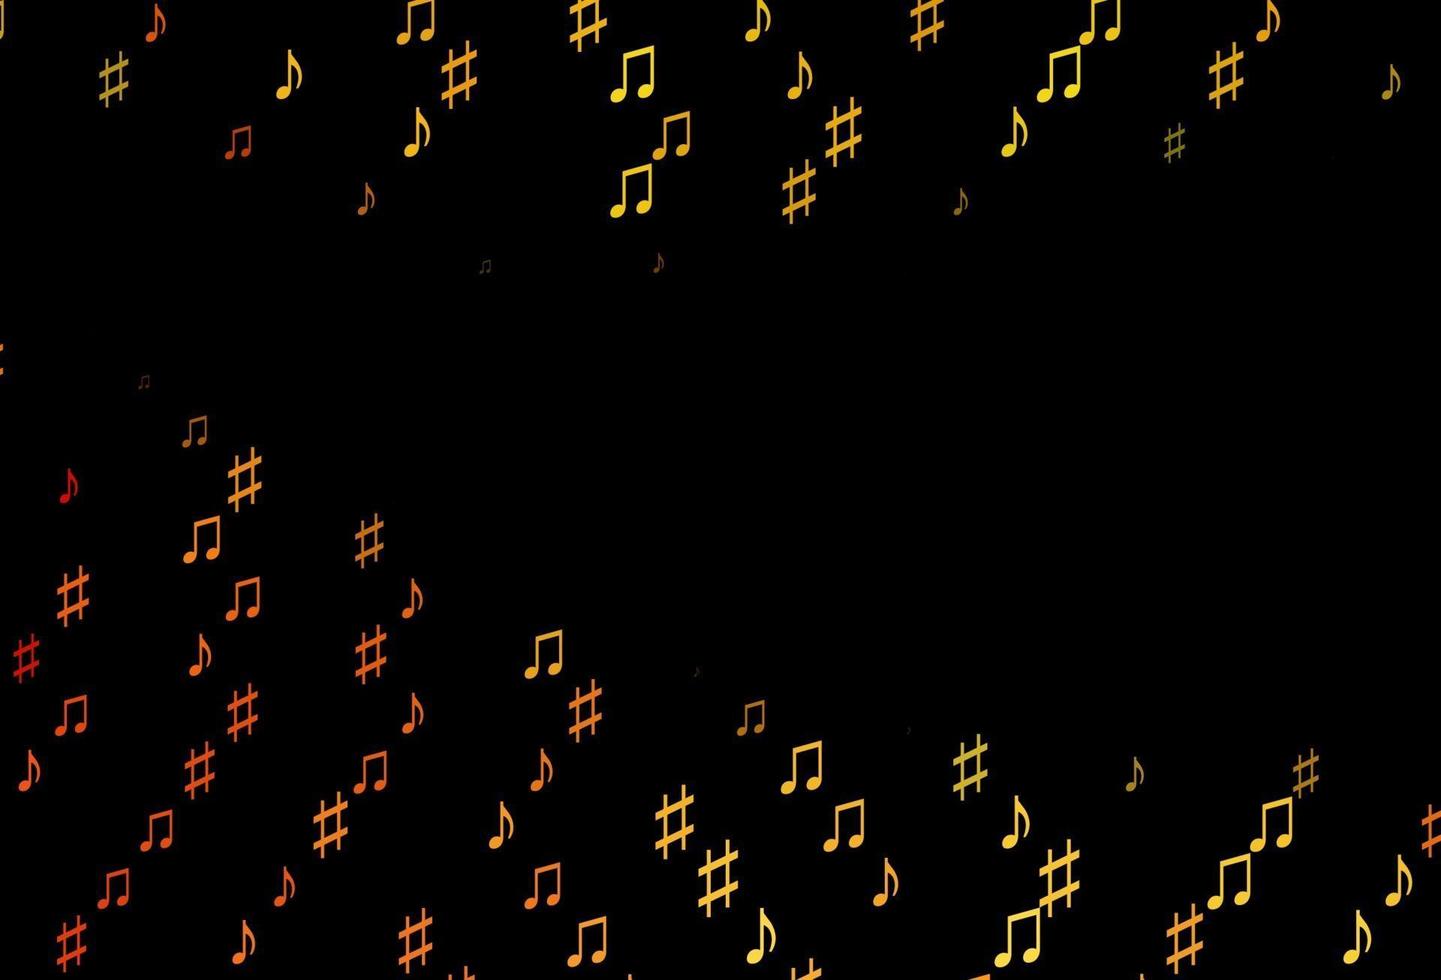 mörkgul, orange vektormall med musikalsymboler. vektor